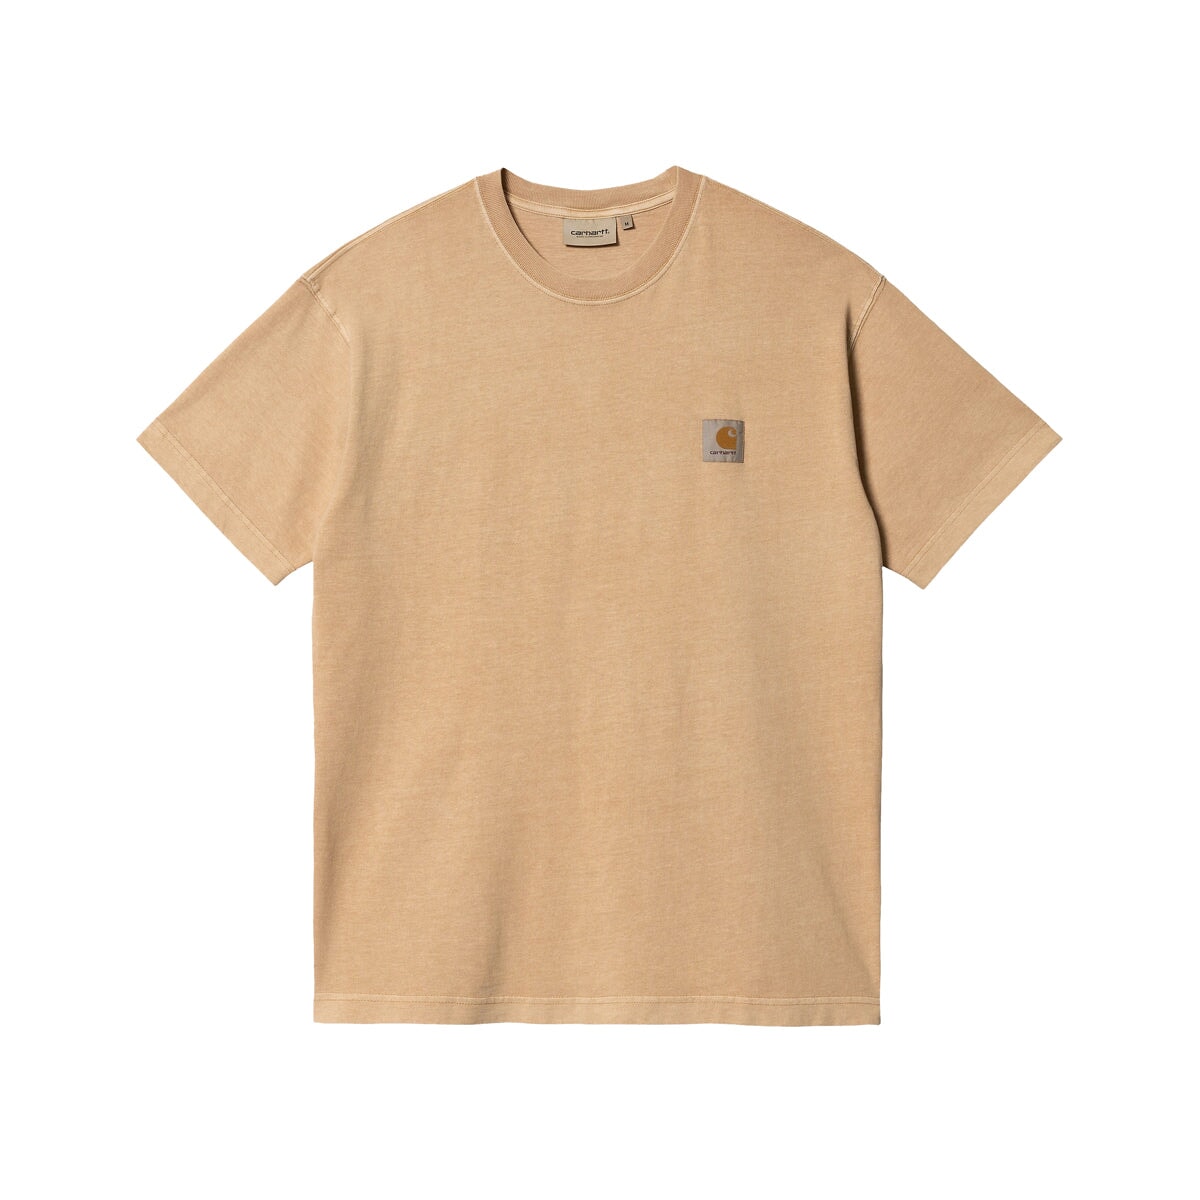 Carhartt WIP Nelson T-Shirt - Dusty H Brown (Garment Dyed) T-Shirt Carhartt WIP 